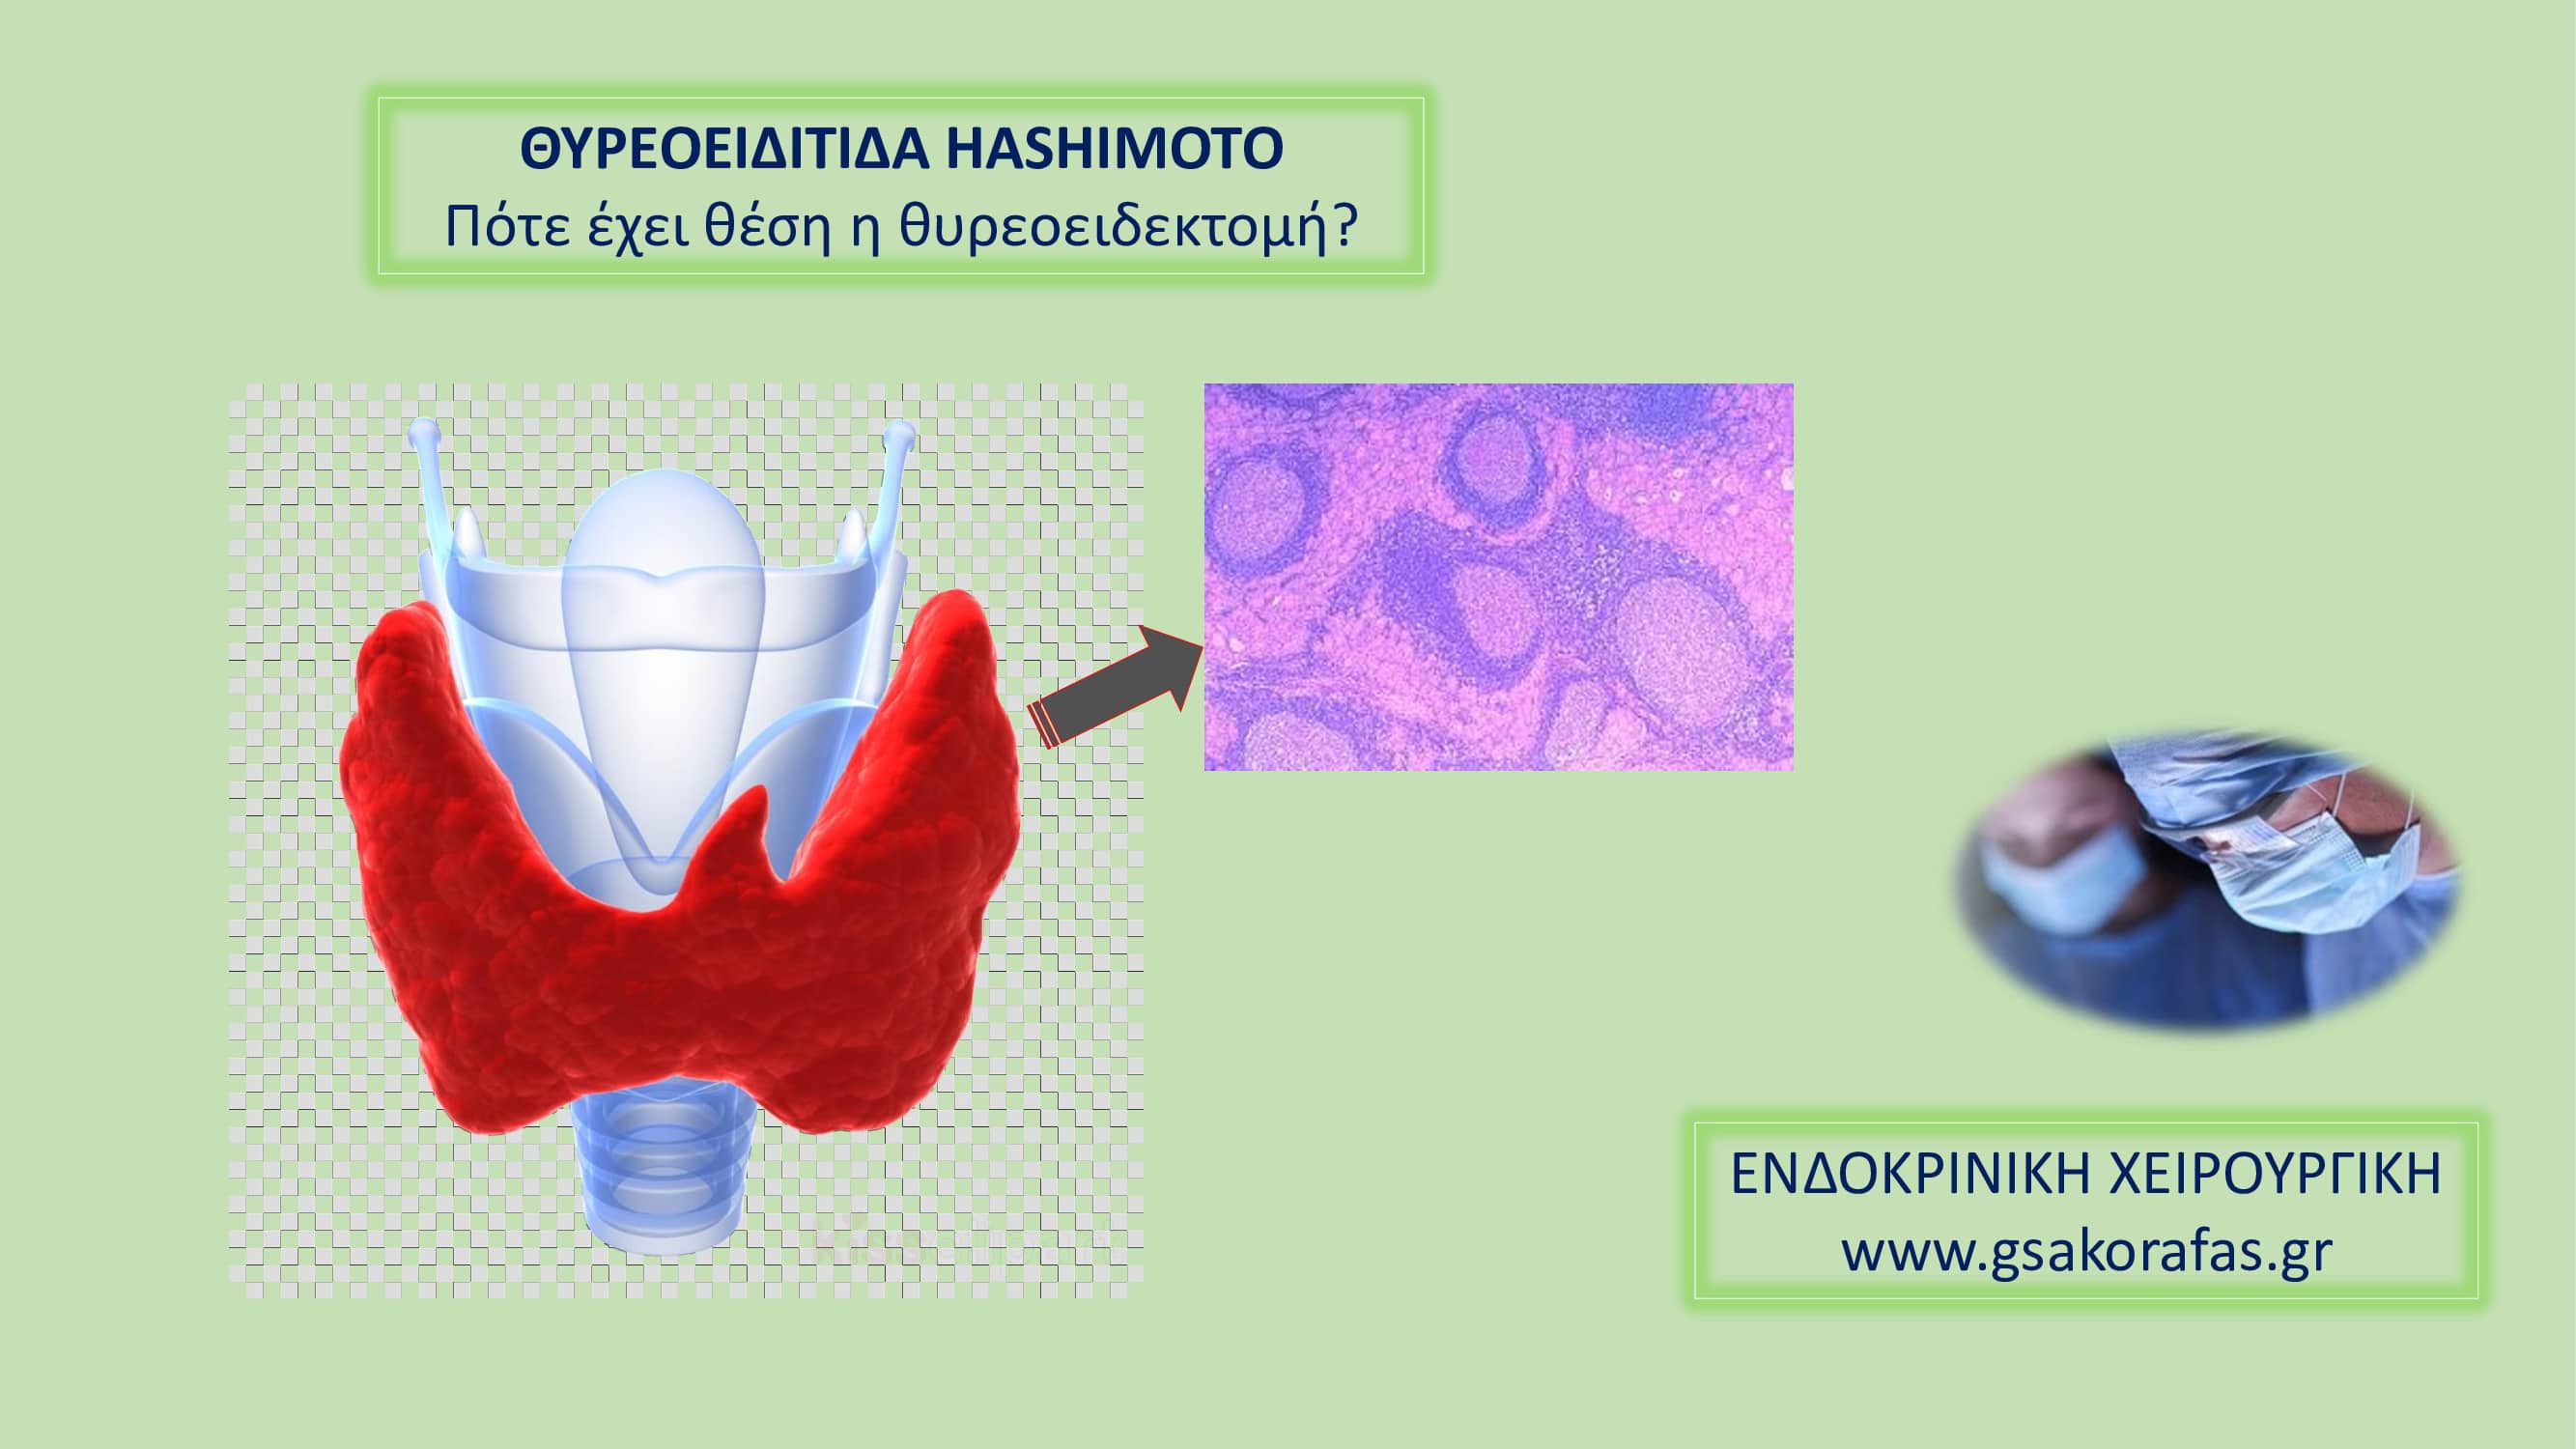 Θυρεοειδίτιδα Hashimoto-πότε έχει θέση η θυρεοειδεκτομή?